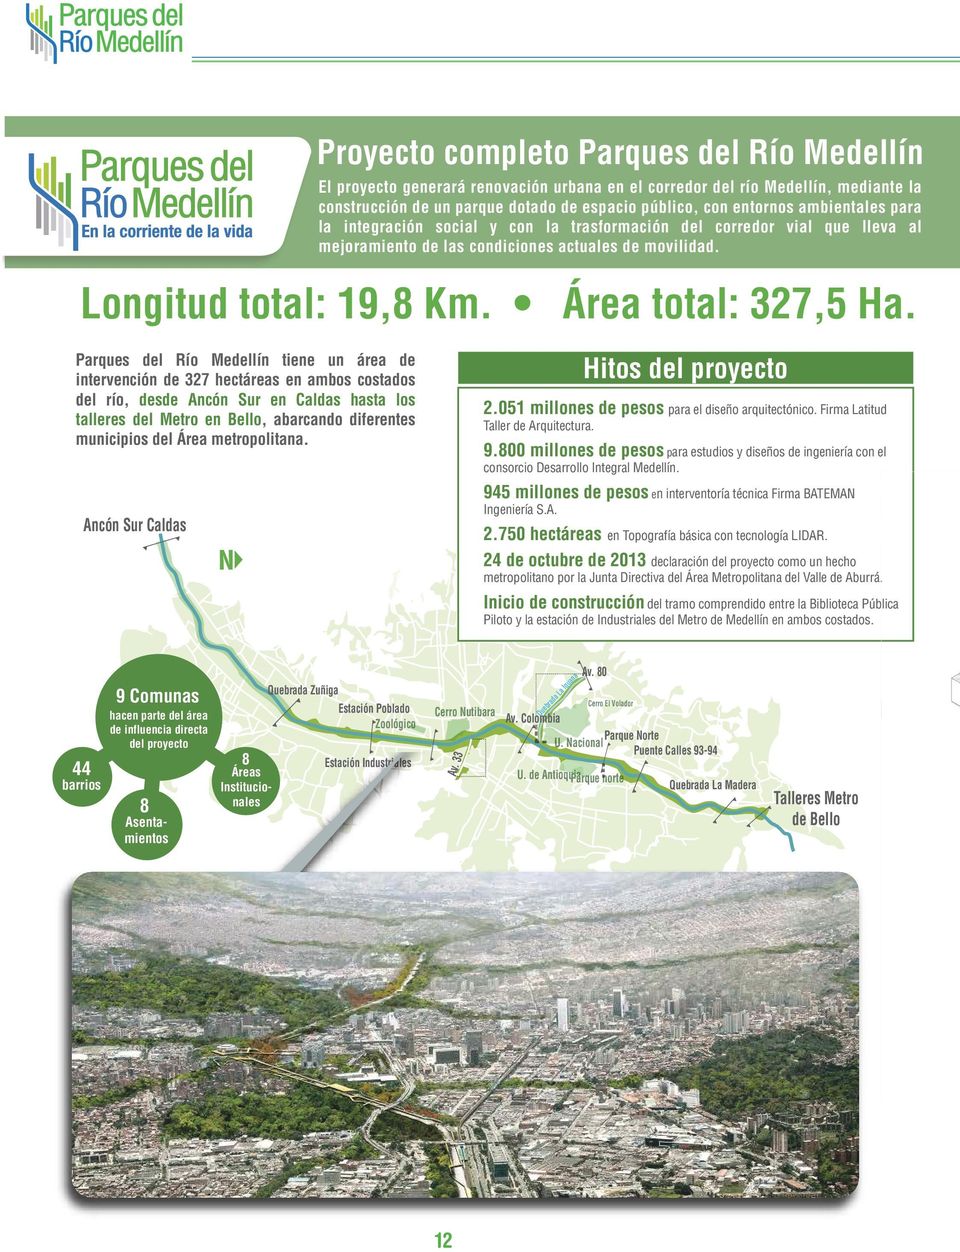 Parques del Río Medellín tiene un área de intervención de 327 hectáreas en ambos costados del río, desde Ancón Sur en Caldas hasta los talleres del Metro en Bello, abarcando diferentes municipios del